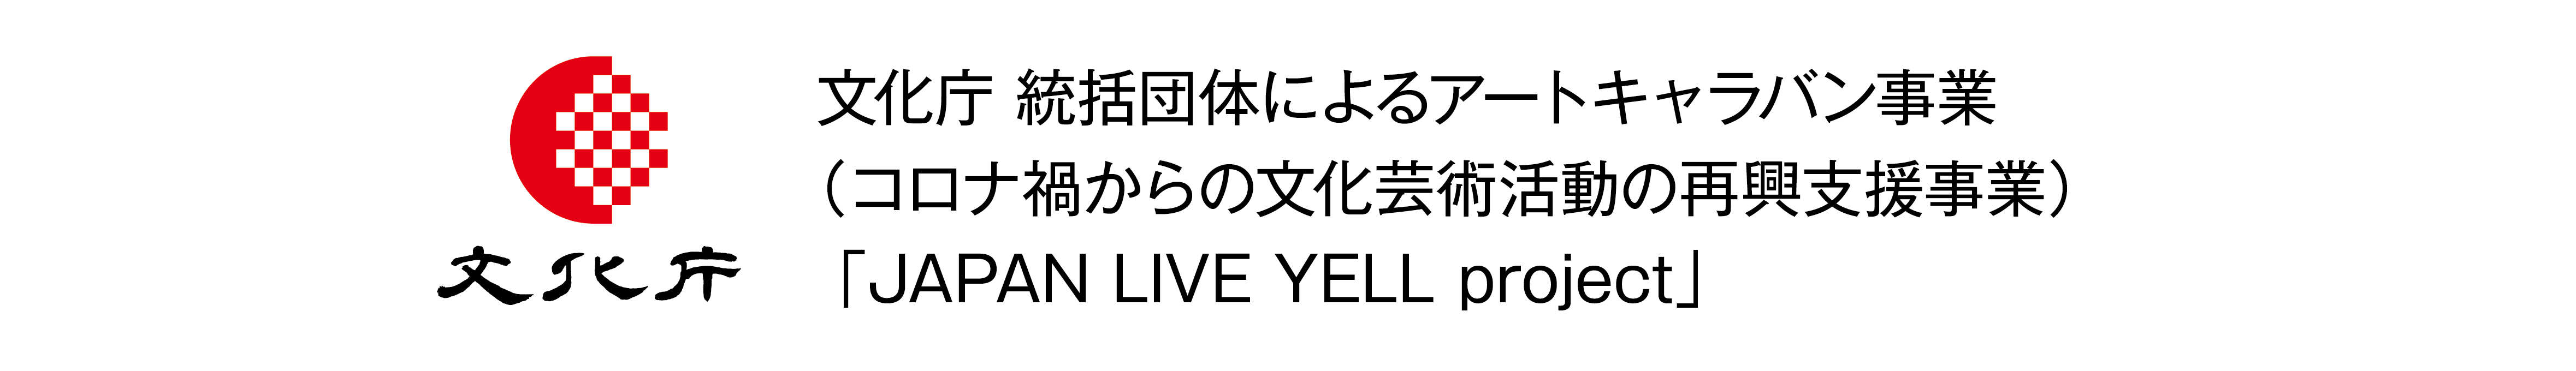 文化庁 JAPAN LIVE YELL project